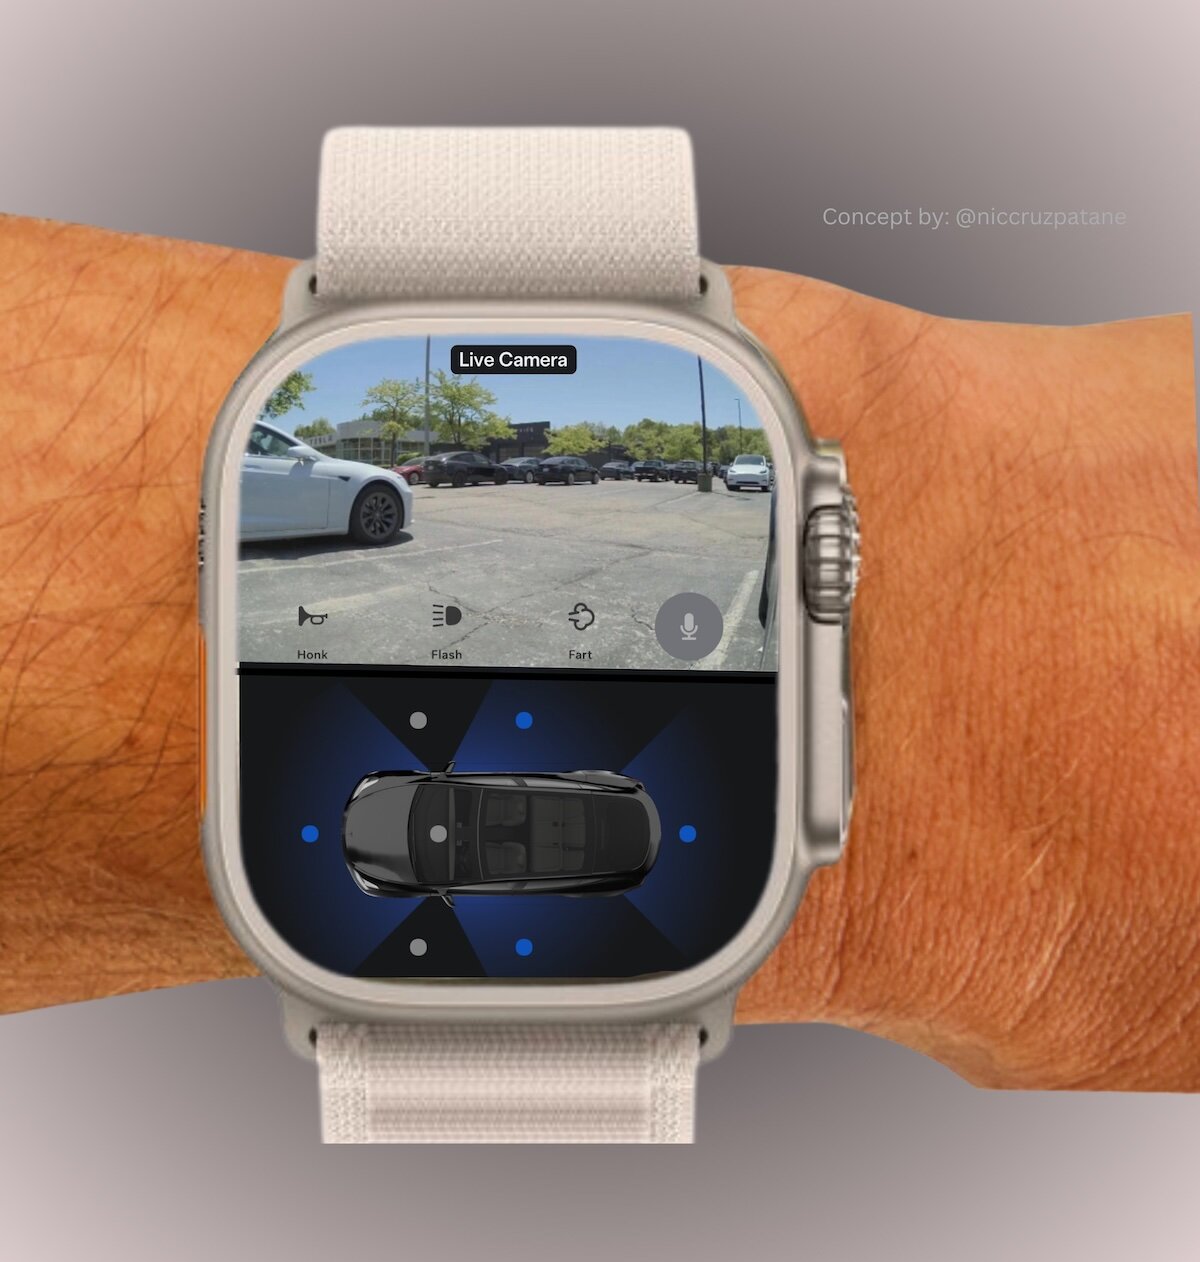 Дизайнер показал концепт камеры кругового обзора в паре с Apple Watch. Один вопрос — зачем?